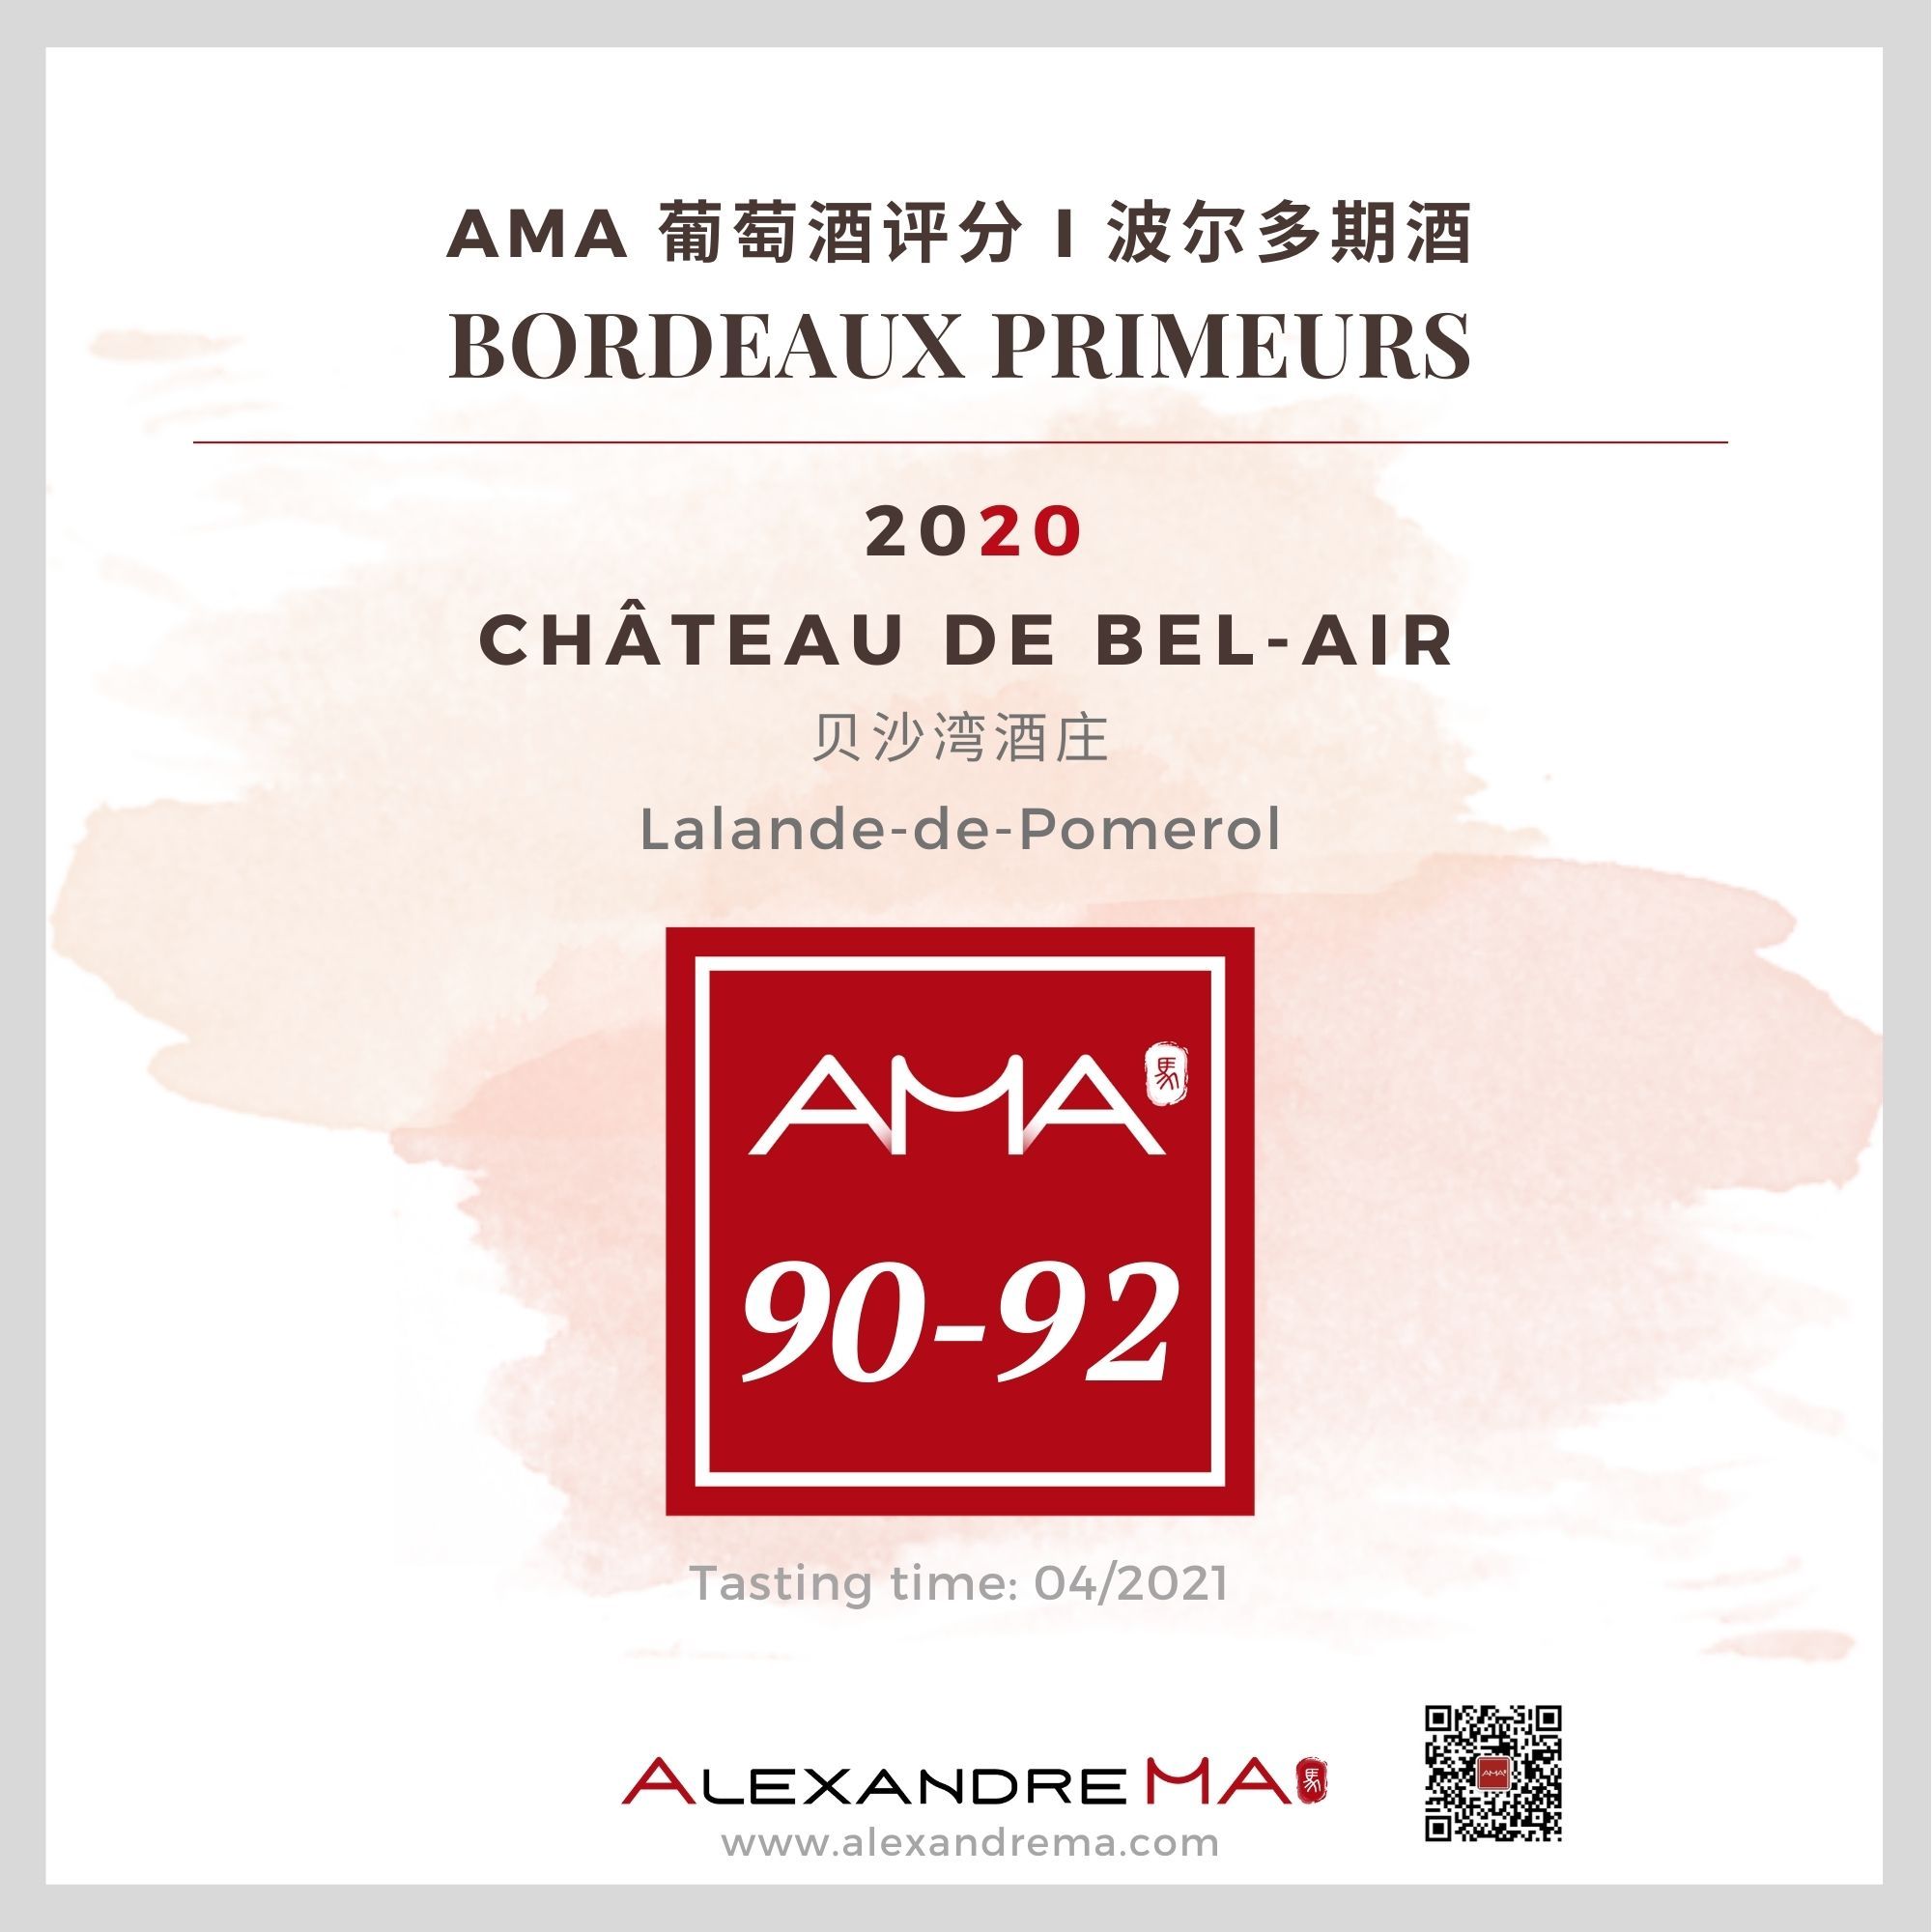 Château de Bel-Air 2020 贝沙湾酒庄 - Alexandre Ma